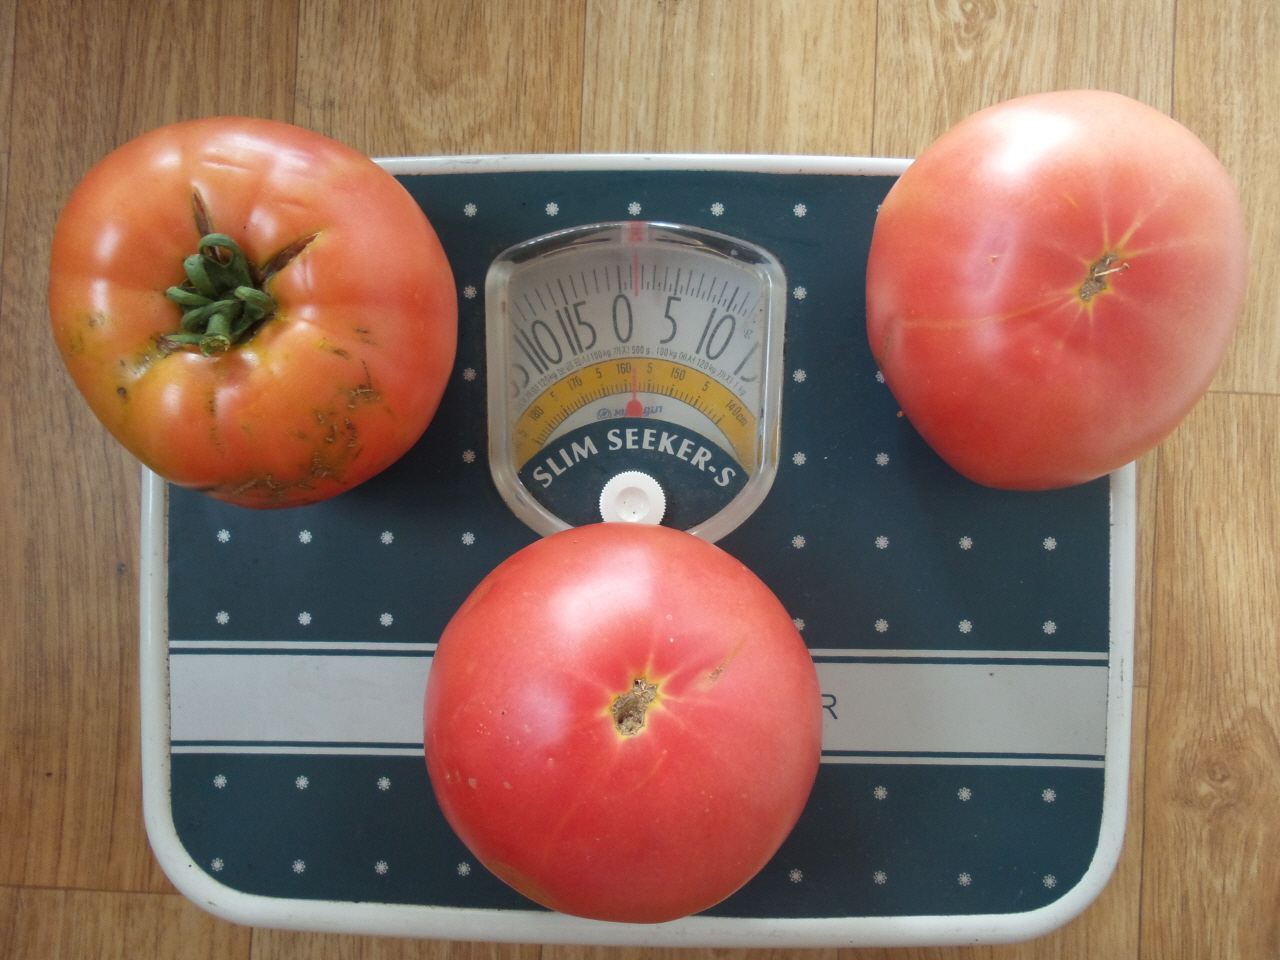 큰 토마토 3개를 저울에 달아보니 1kg이 조금 넘는다. 한 그루에 30여개가 열리니 무게로 따지면 30kg이나 된다. 